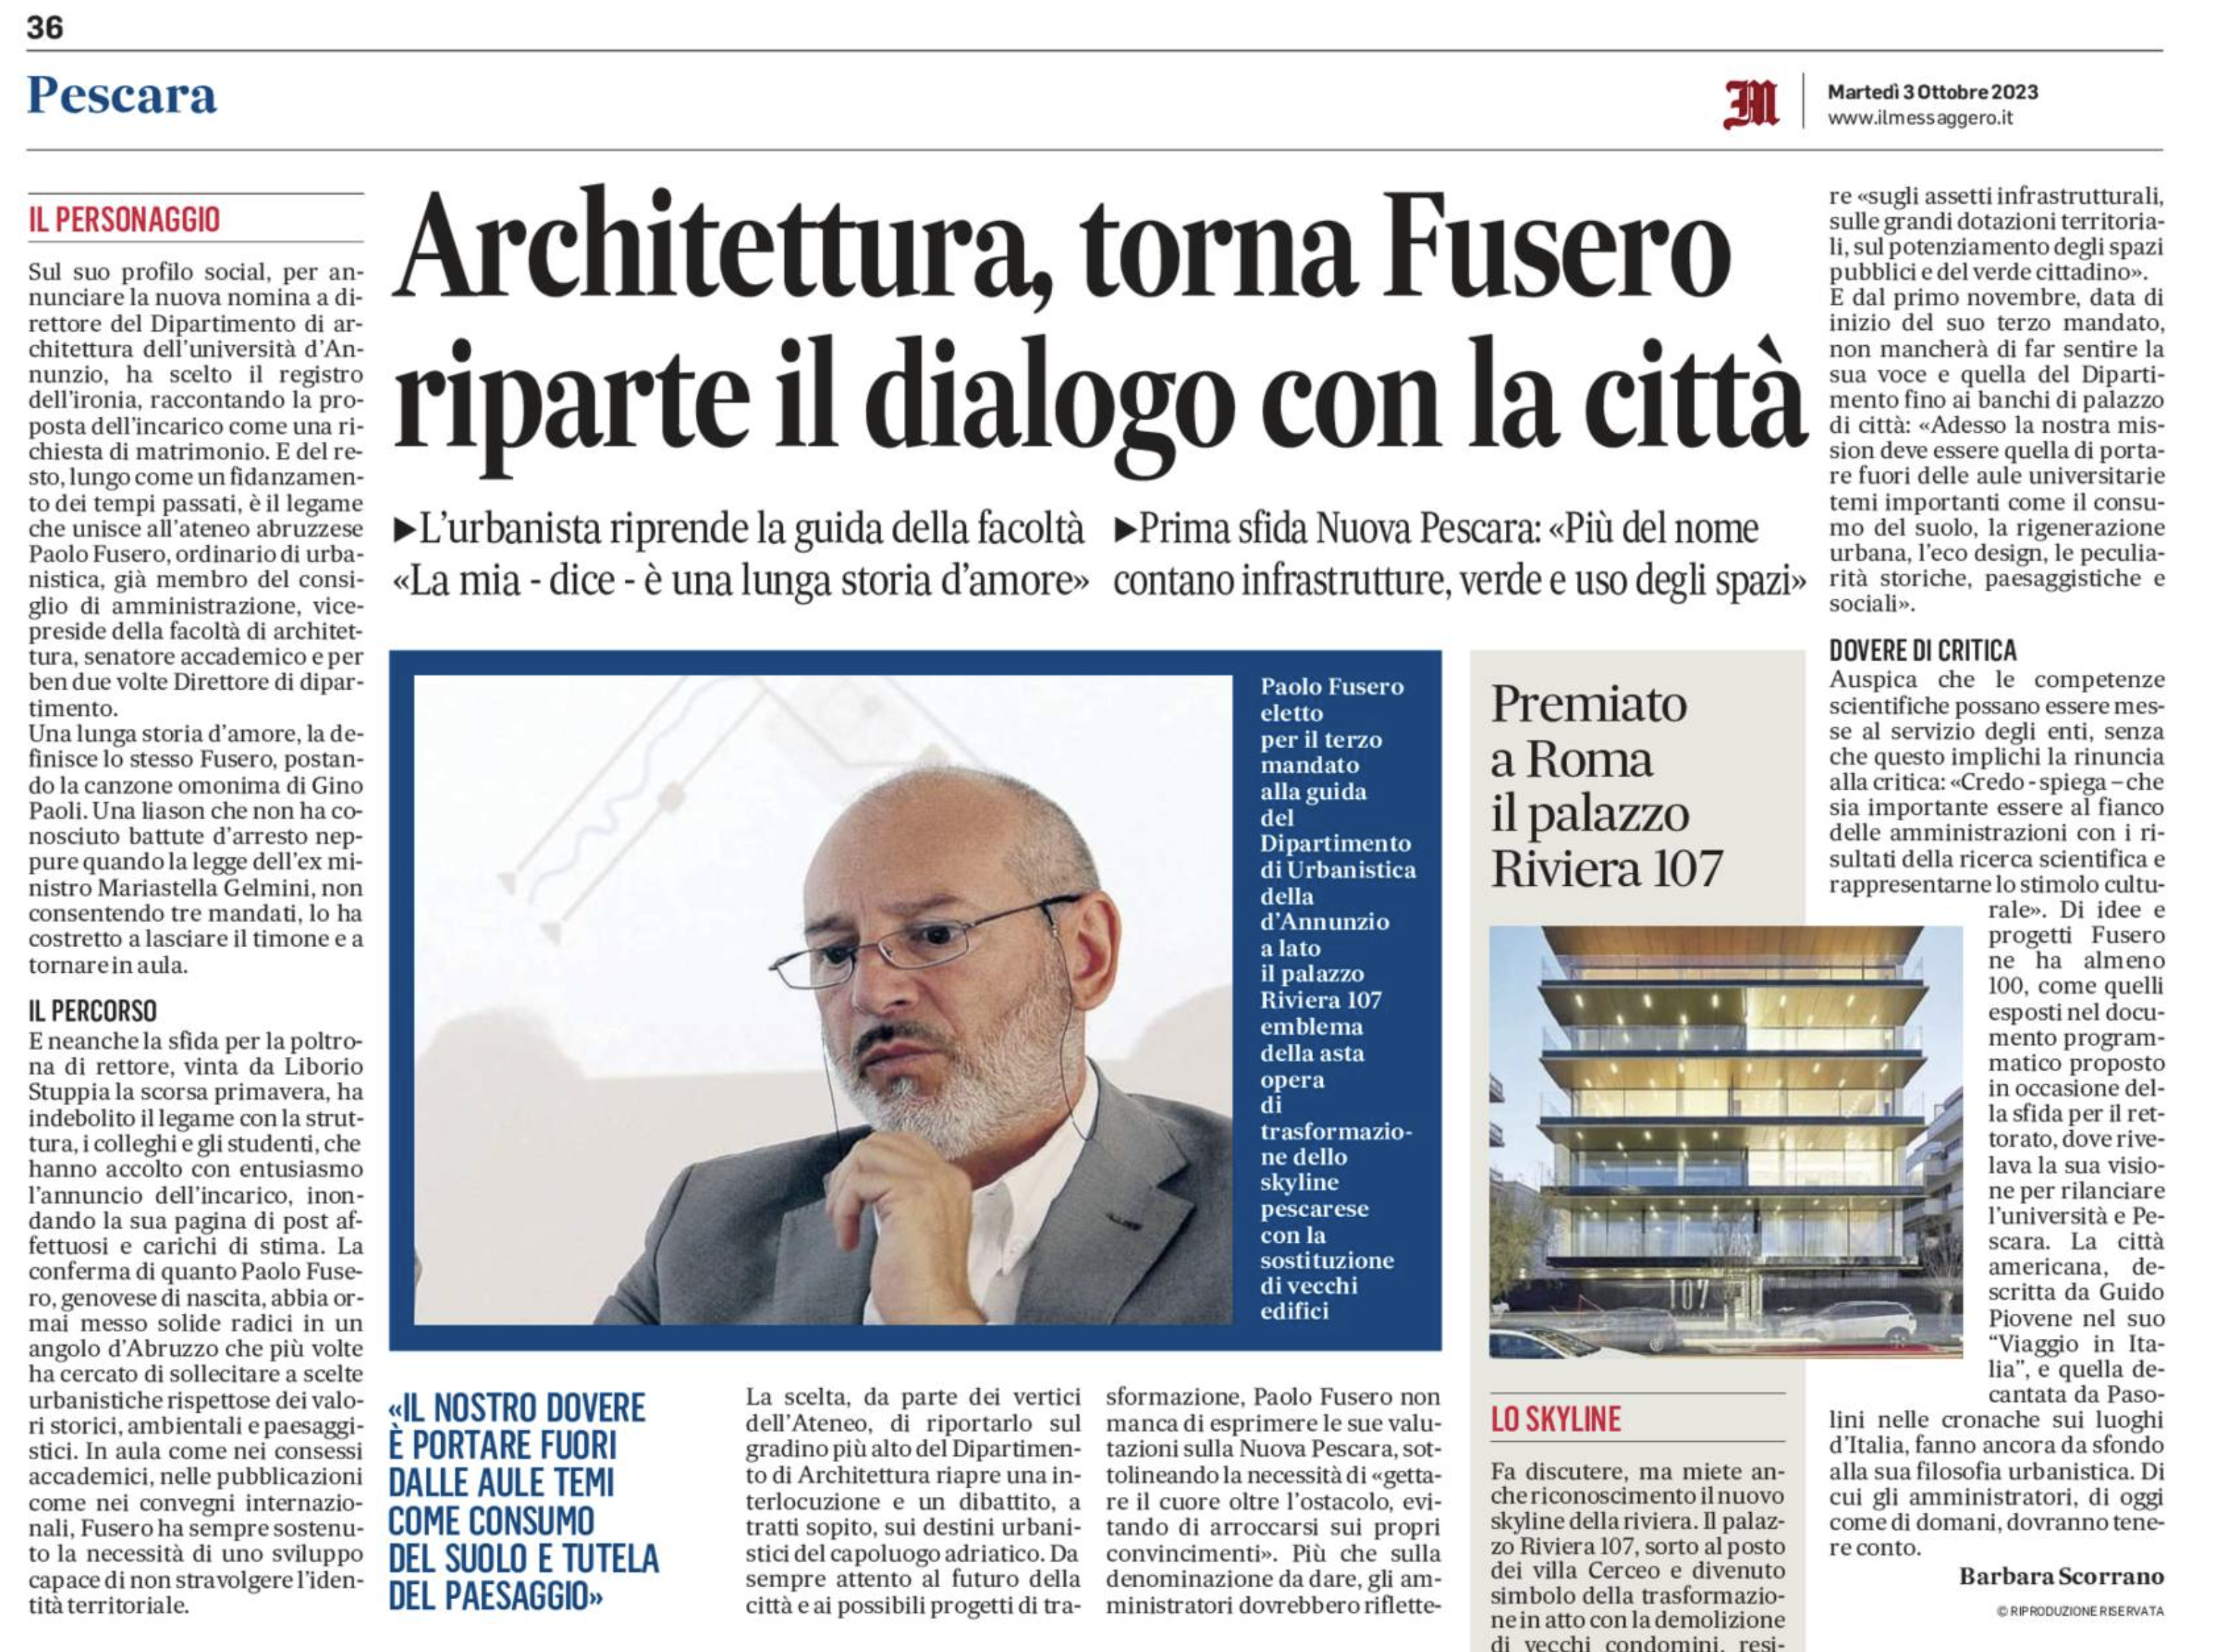 Il prof. Paolo Fusero eletto per la terza volta Direttore del Dipartimento di Architettura dell'Università G. d'Annunzio